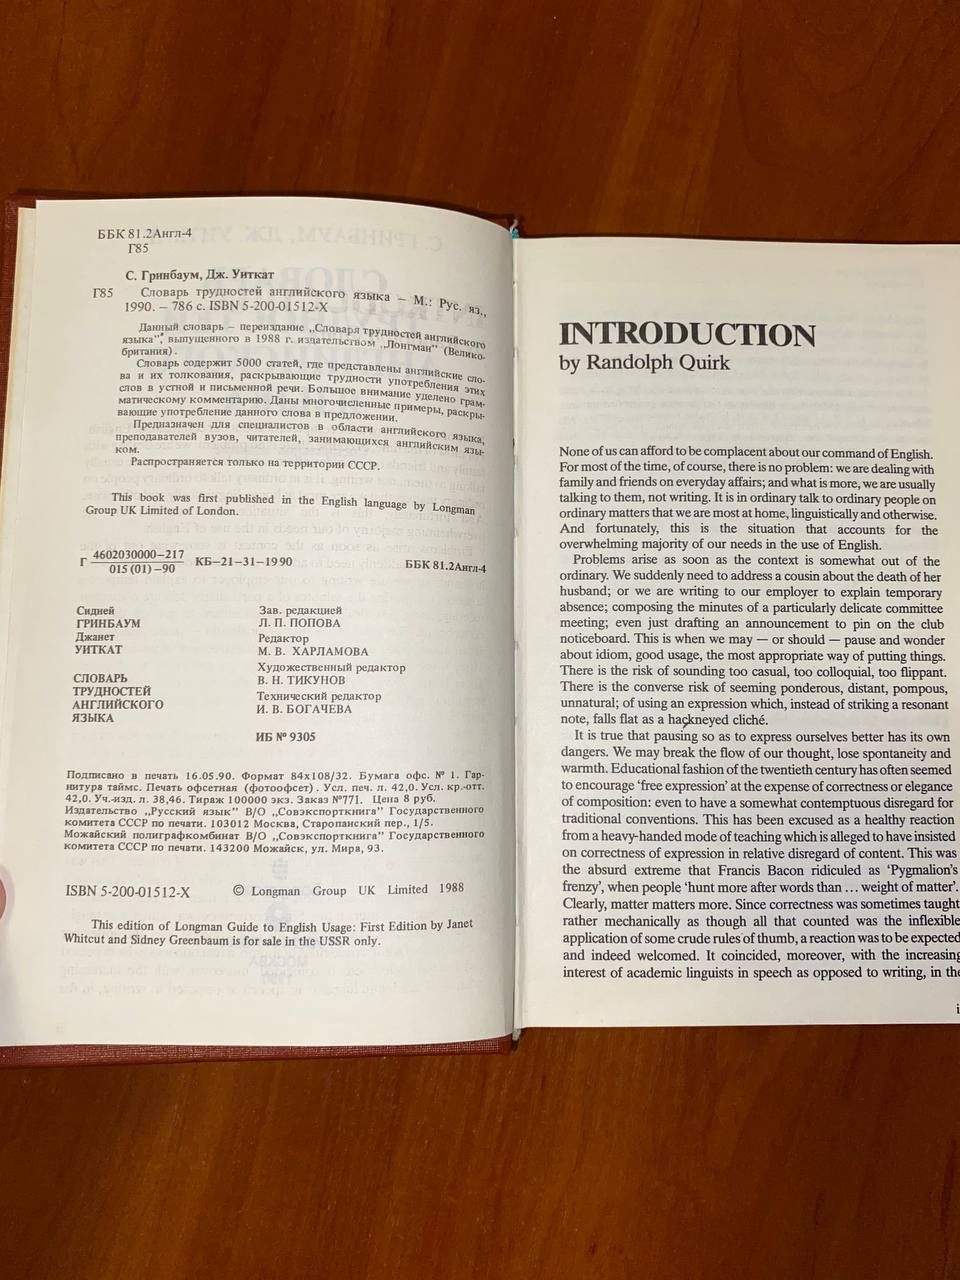 С. Гринбаум, Дж. Уиткат "Словарь трудностей английского языка", 1990